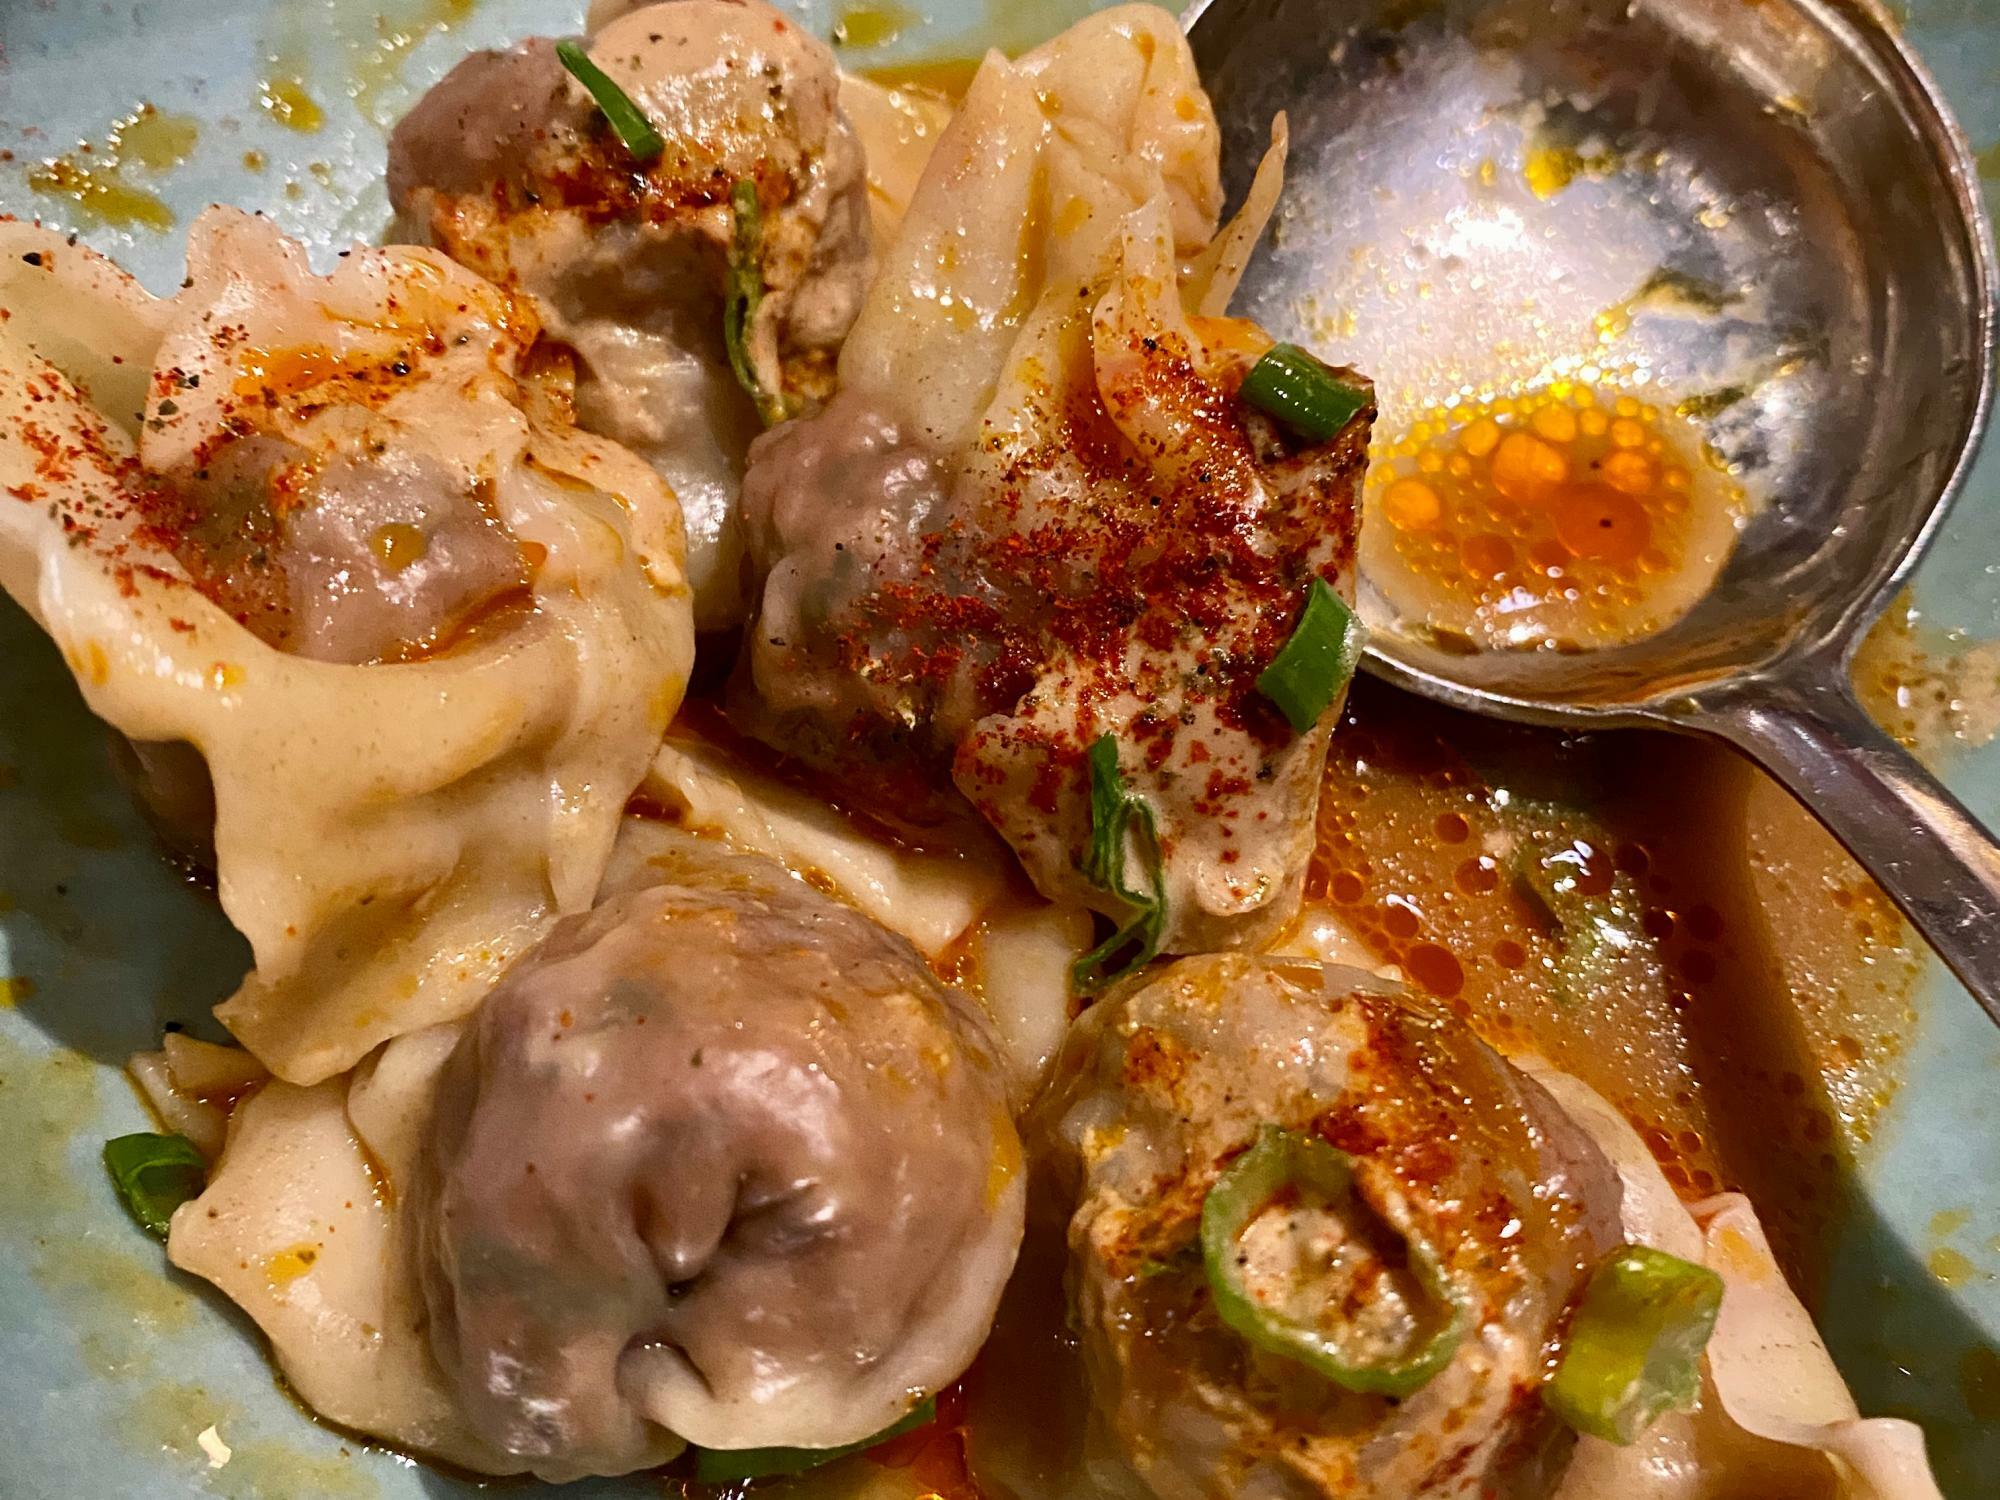 今月初めに筆者がサンフランシスコ市内の中華料理店で食べた、インポッシブル・フーズ製の肉で作った「インポッシブル点心」。メニューにその旨が説明されていた（筆者撮影）